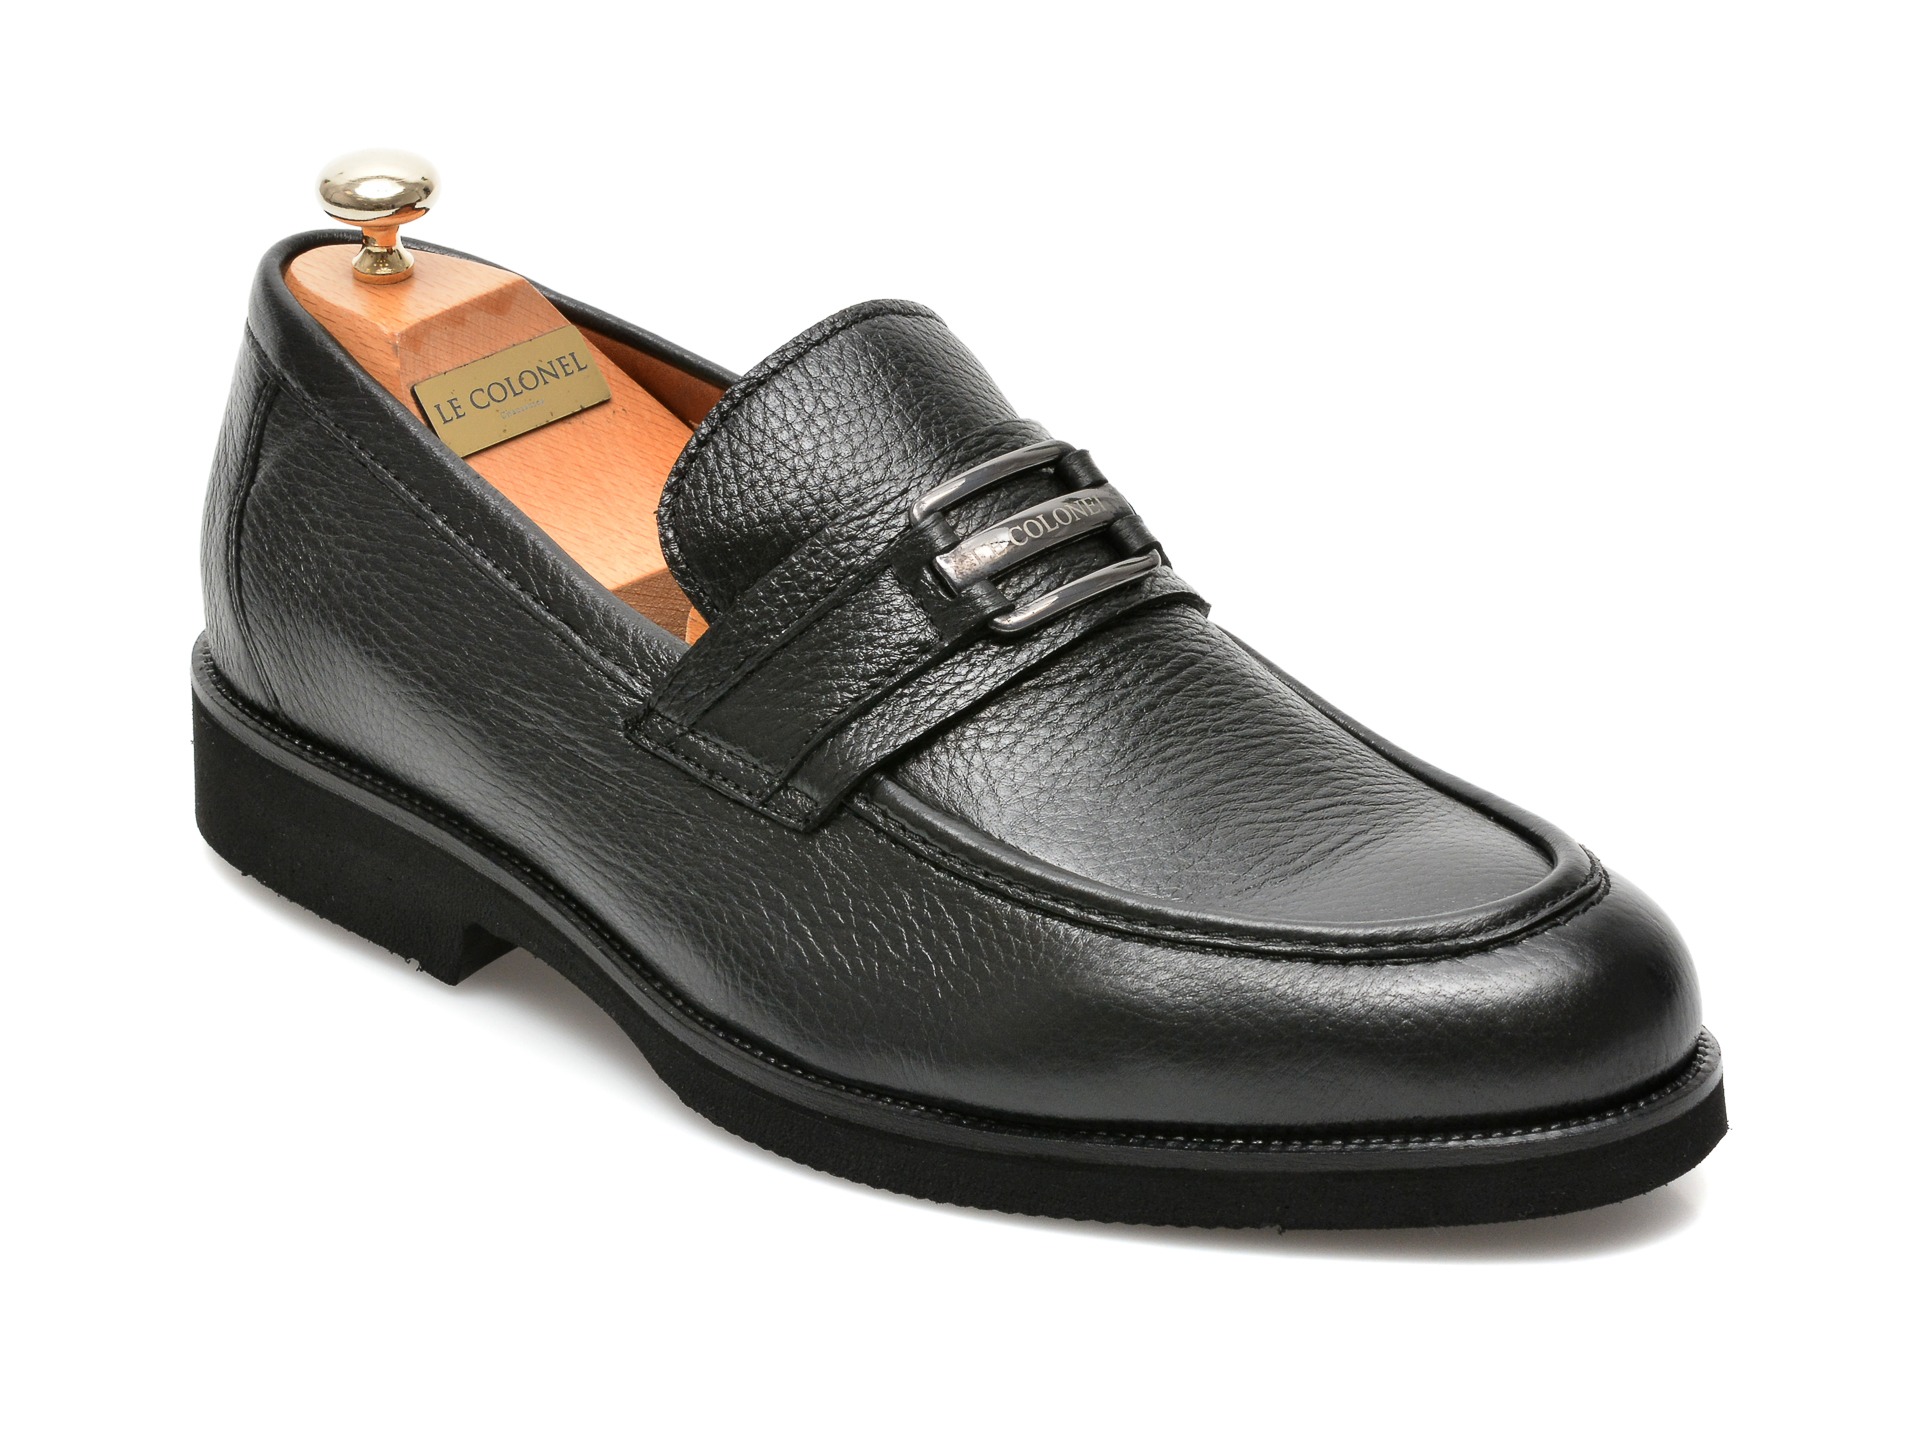 Pantofi LE COLONEL negri, 63914, din piele naturala Le Colonel